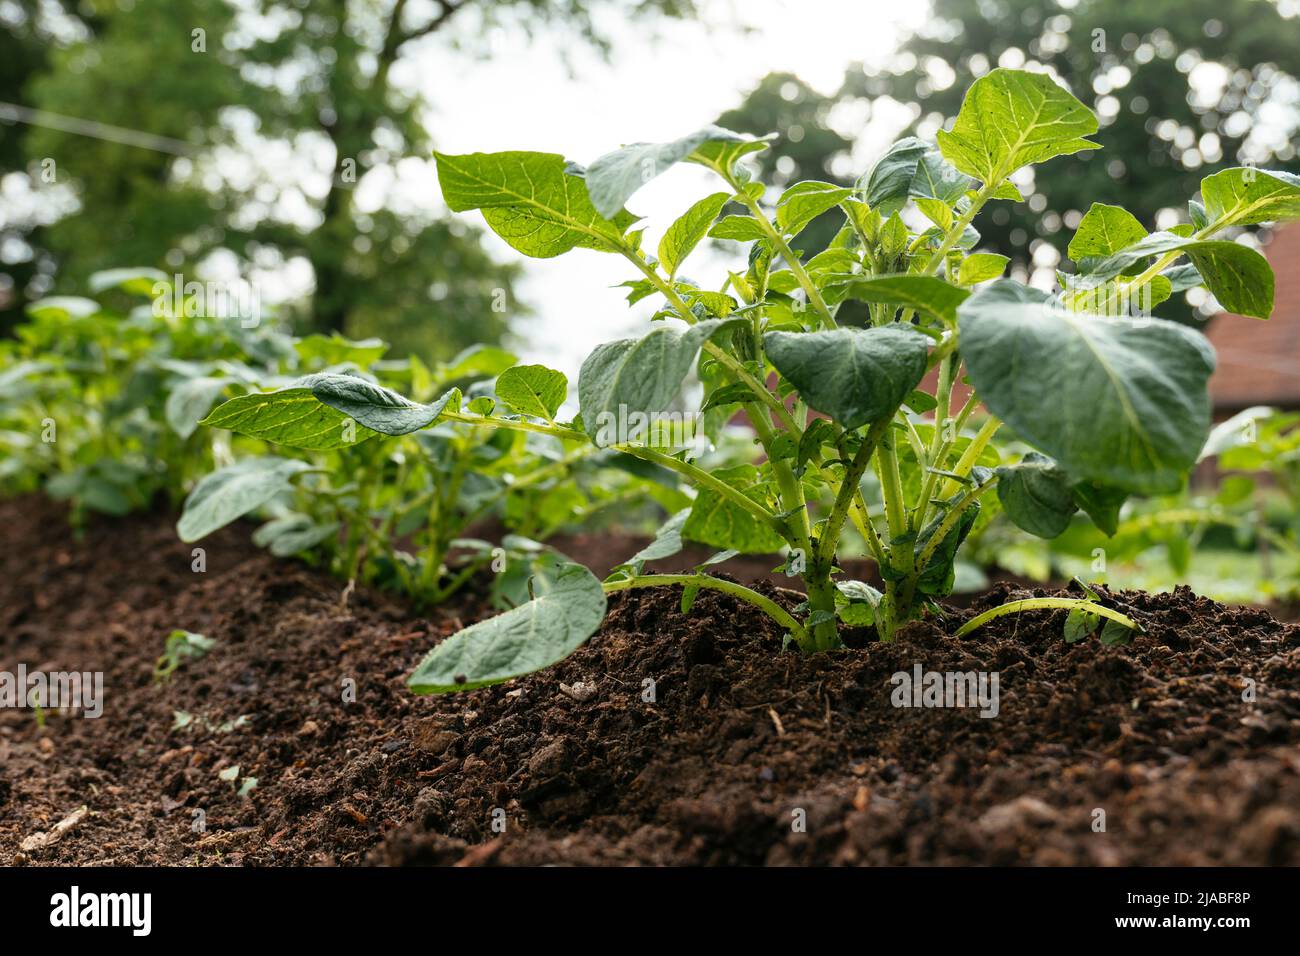 Row of potato plants in a vegetable garden. Stock Photo